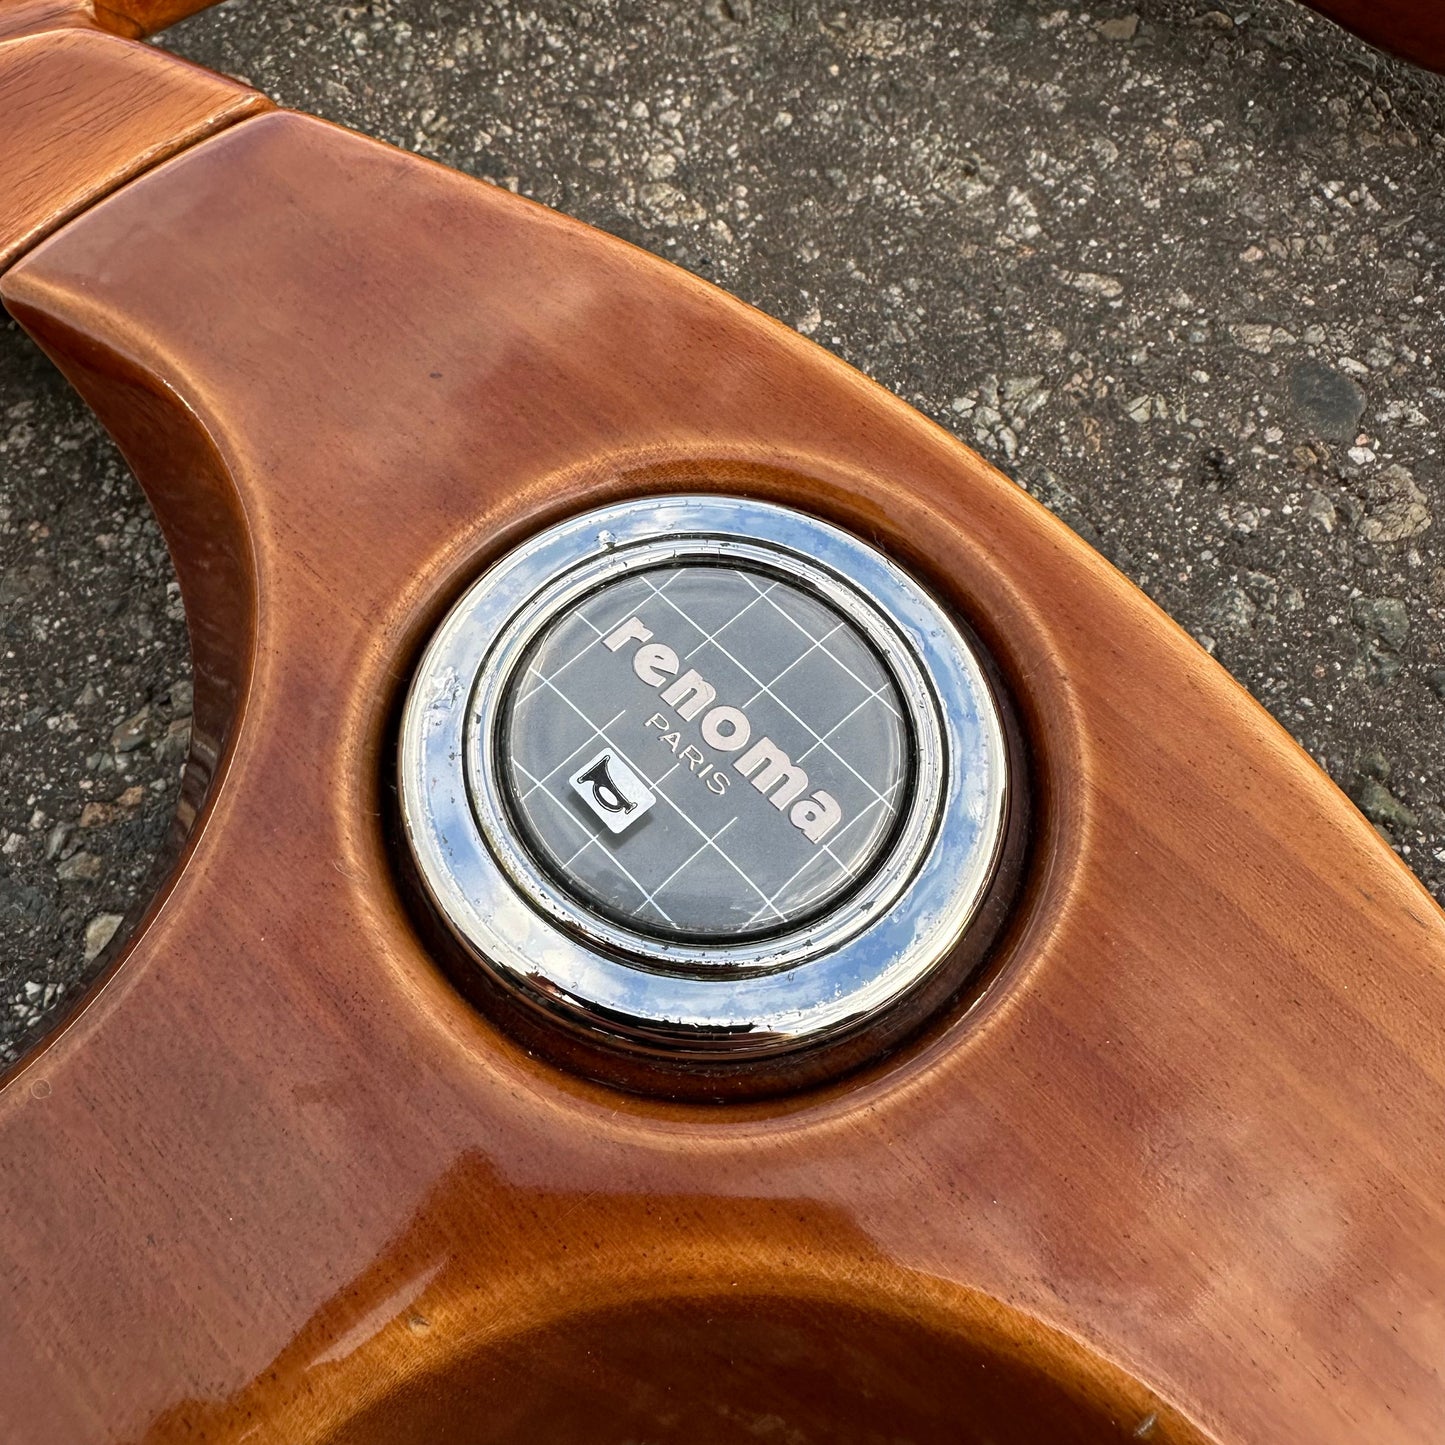 Renoma Tri Spoke Wood Grain Steering Wheel